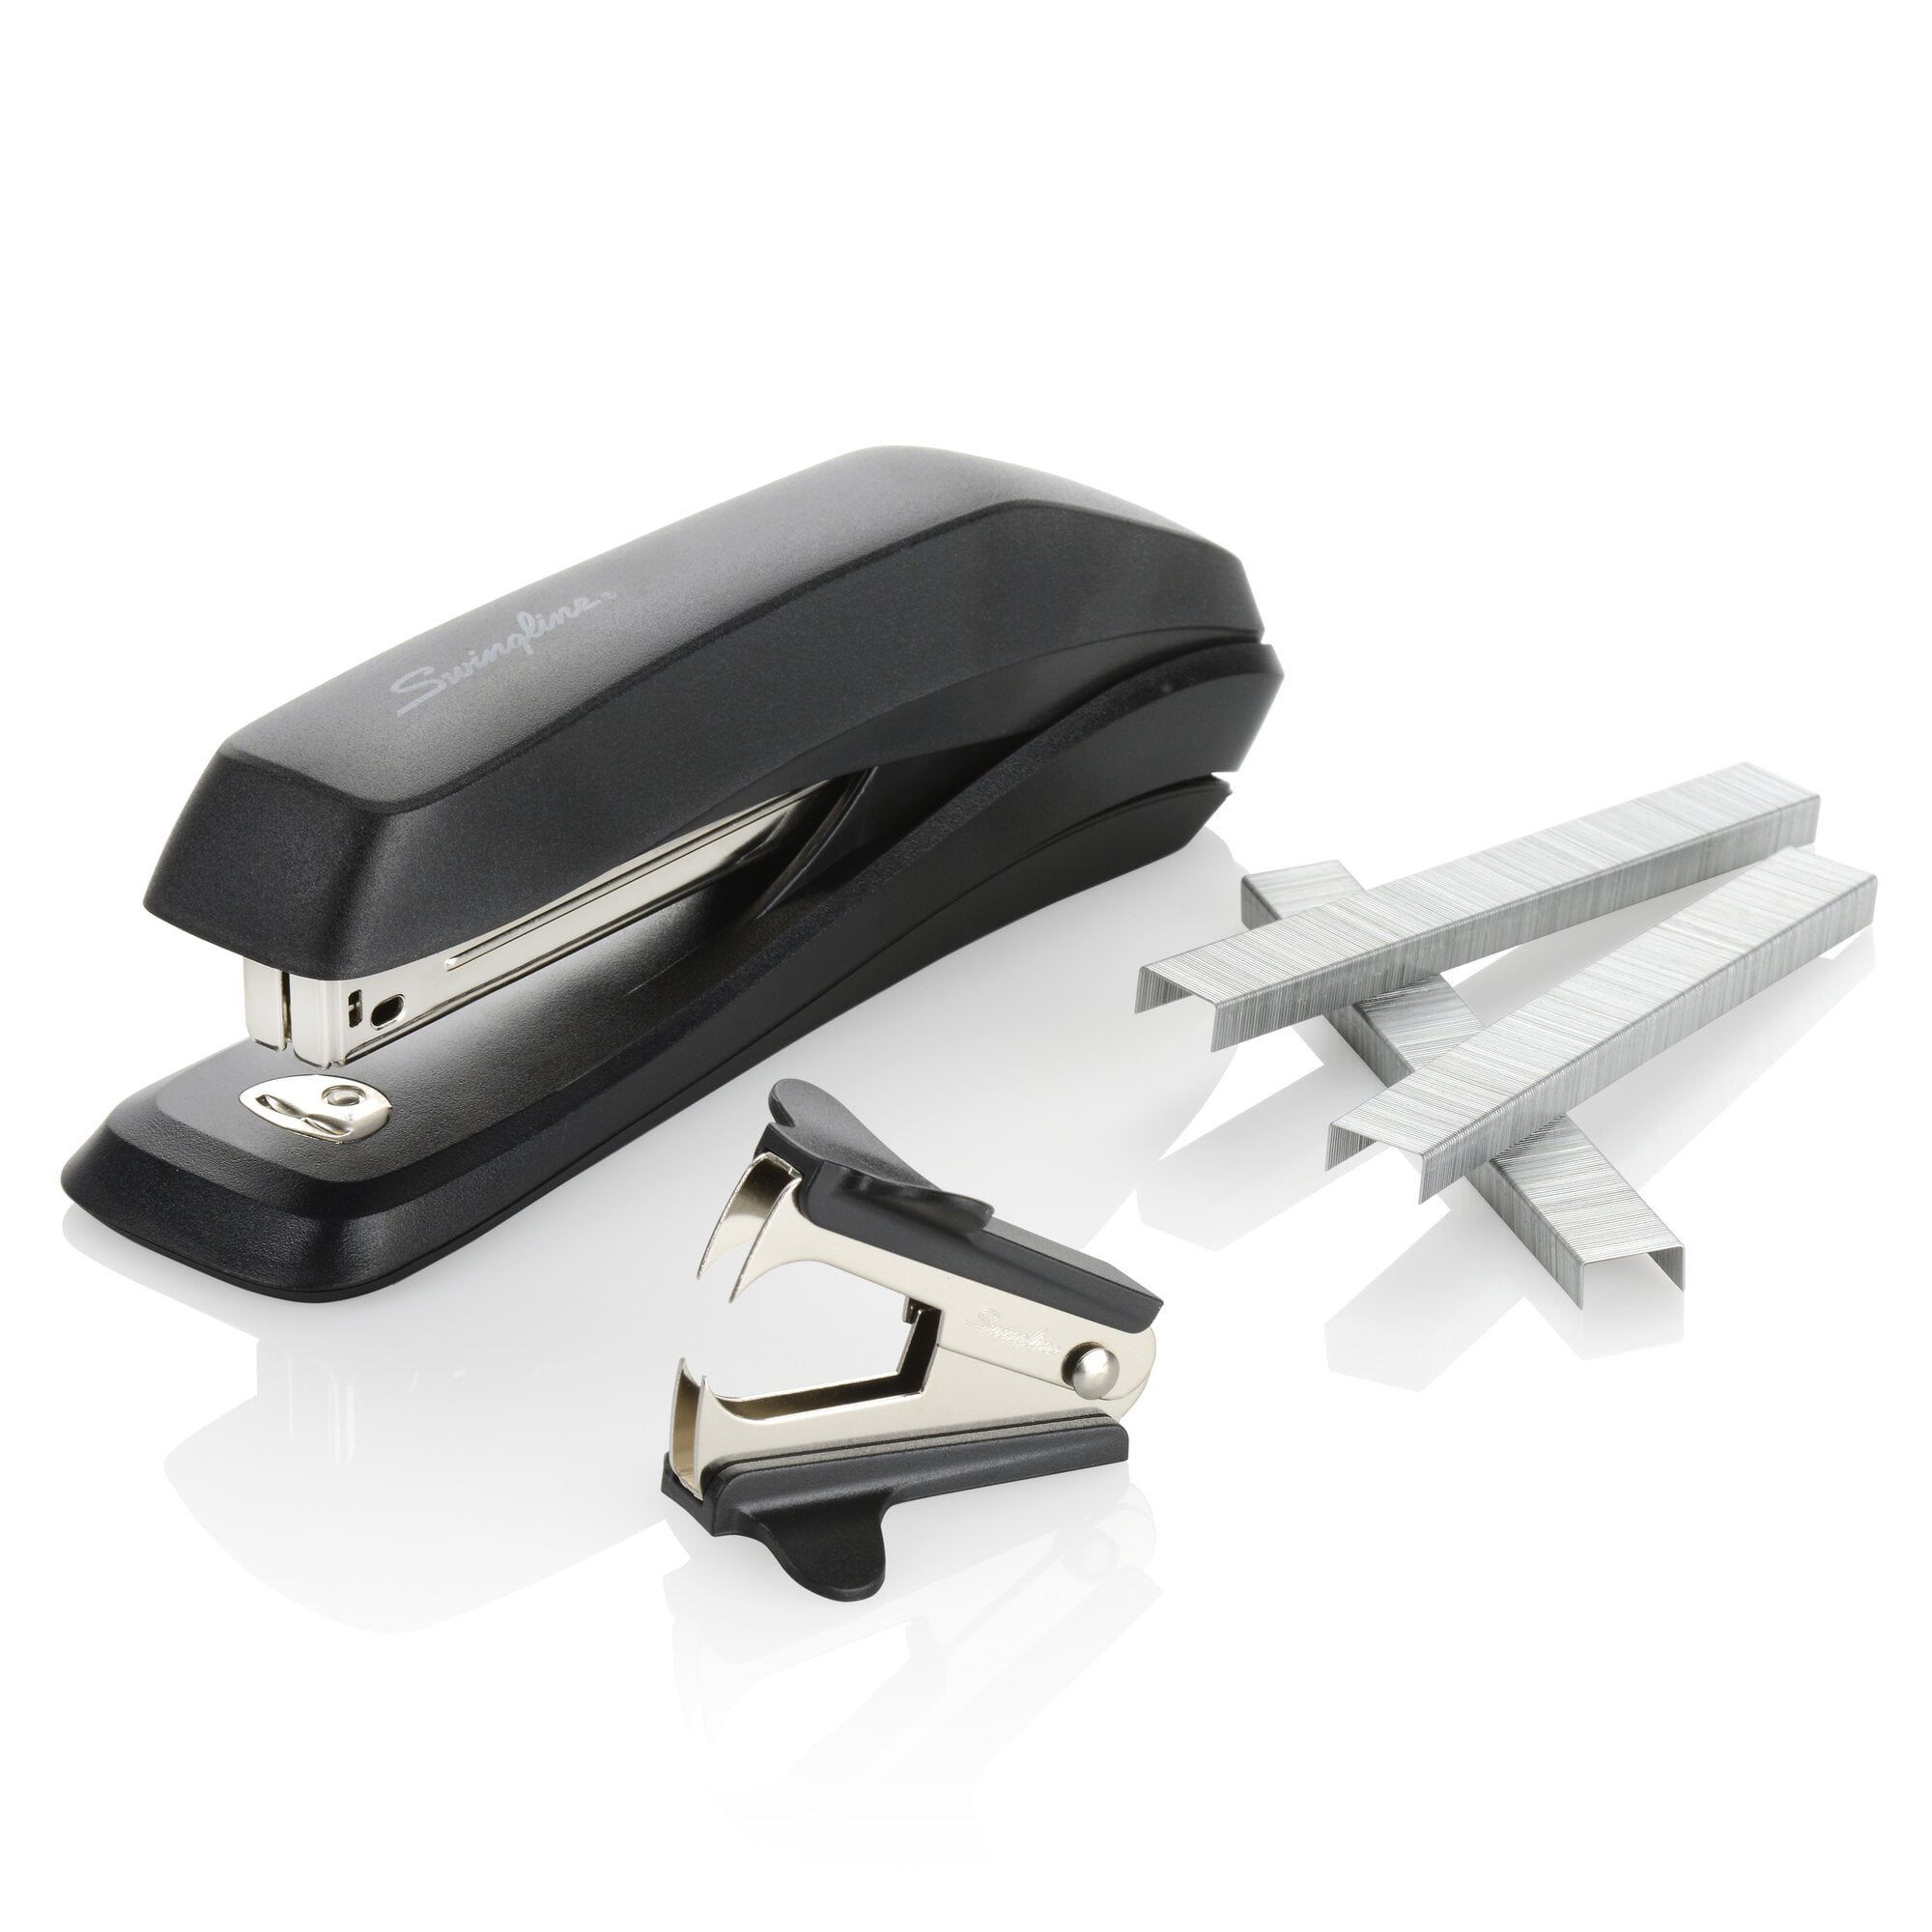 Swingline Standard Desk Stapler Bonus Pack w/ Remover and staples - Blue  74711545679